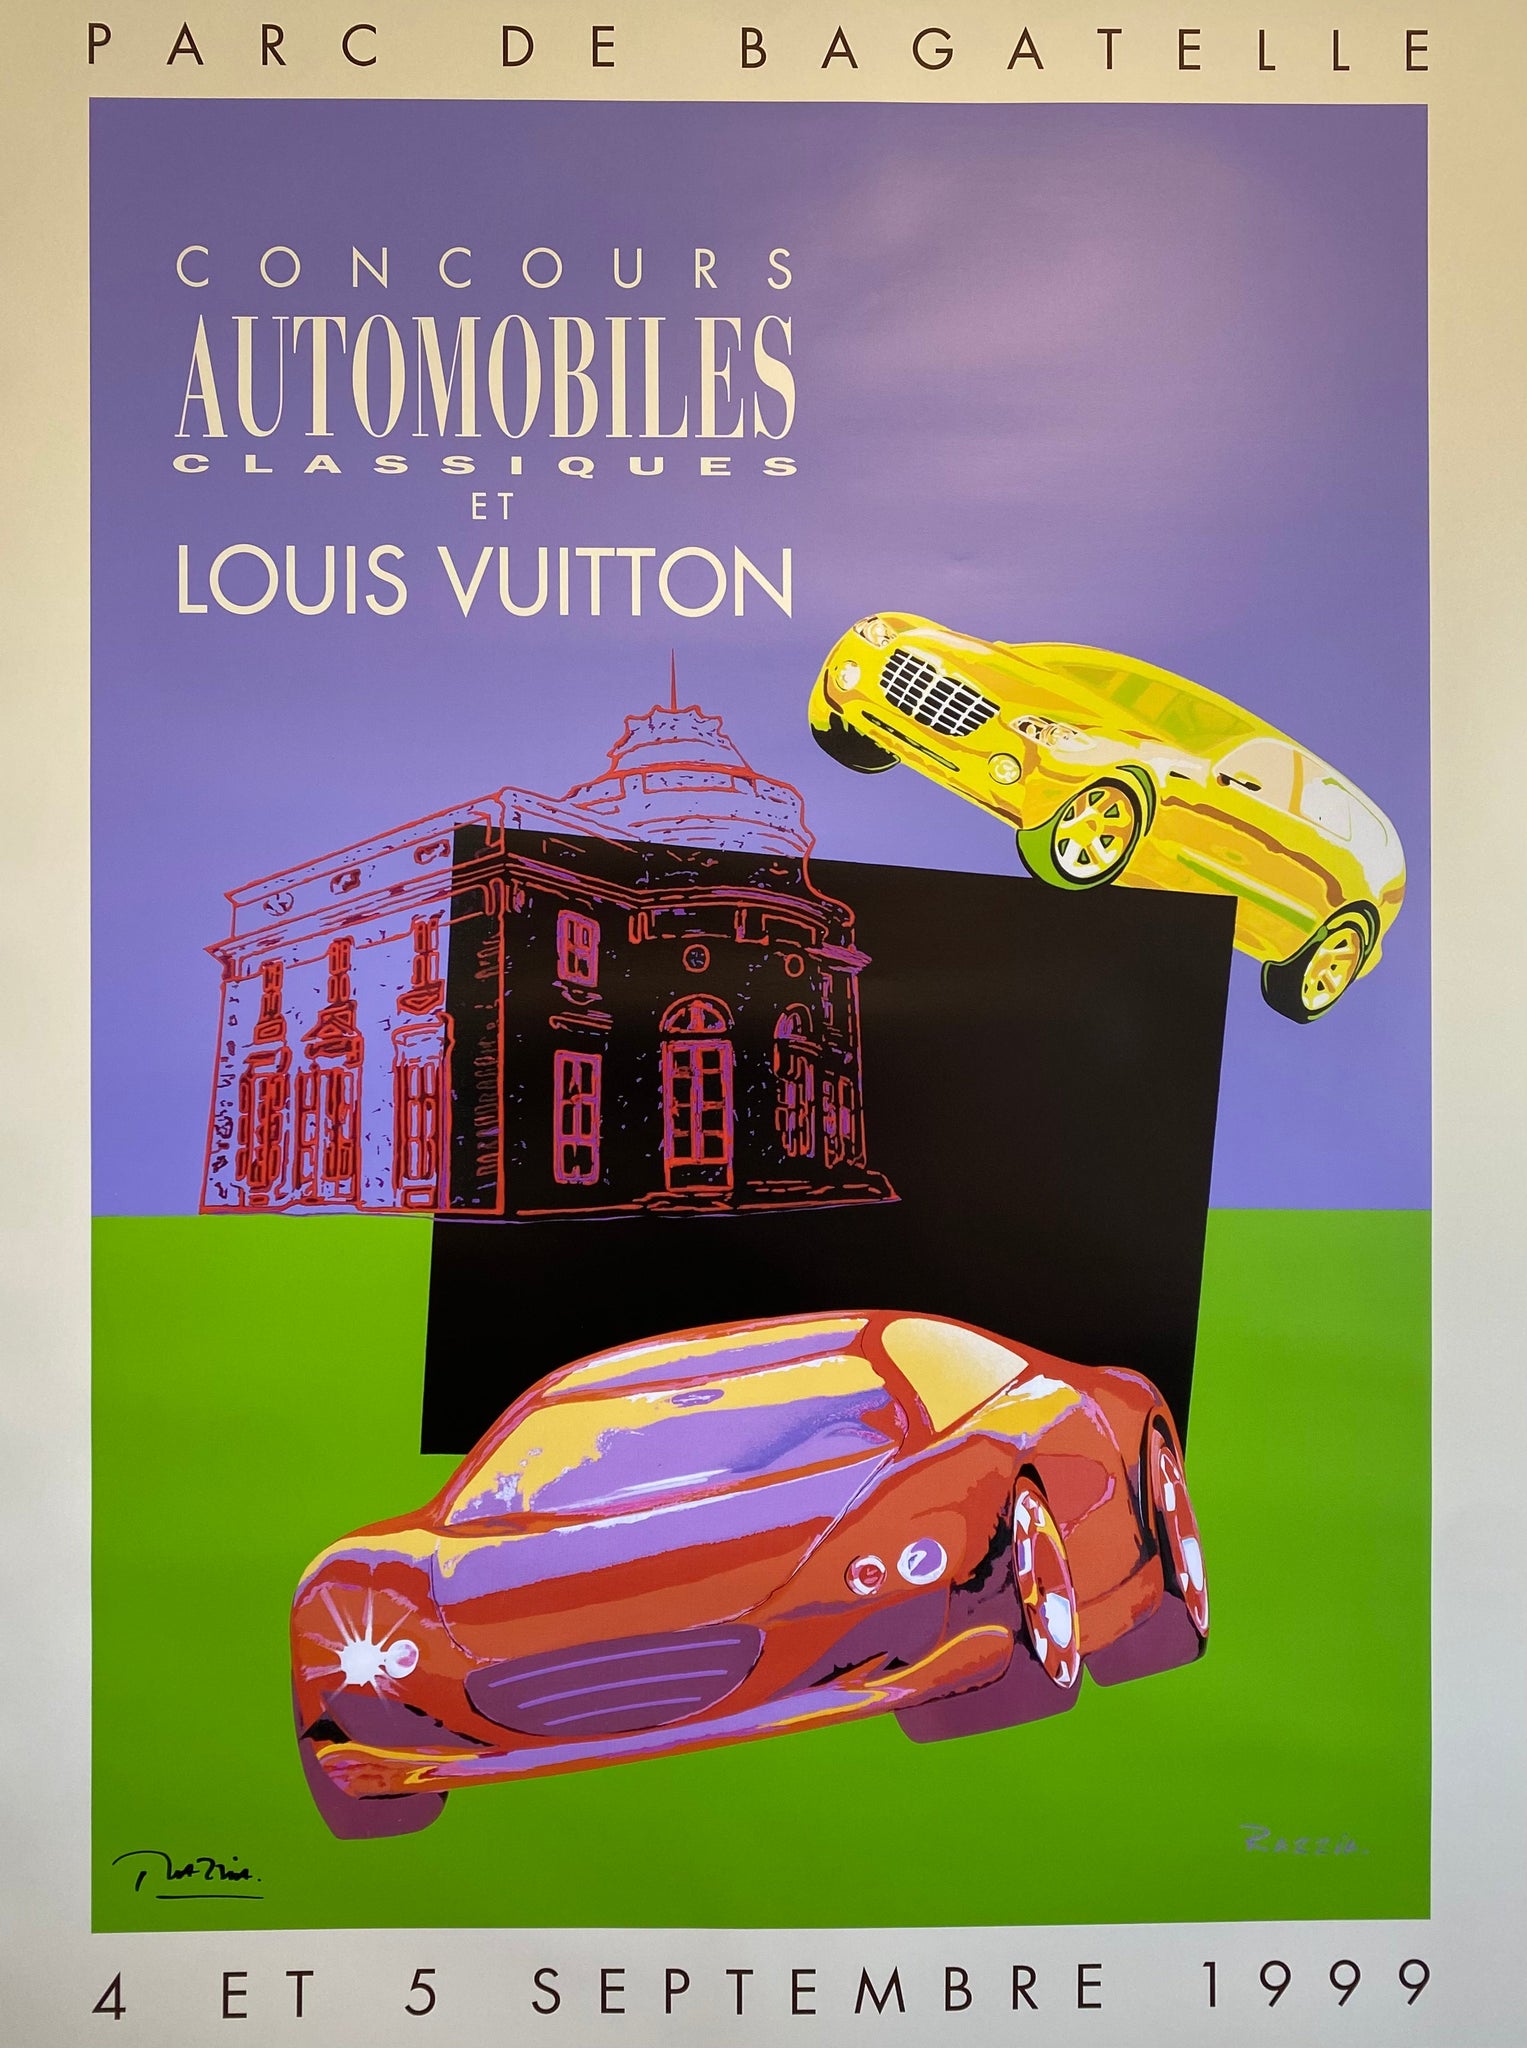 Louis Vuitton classic Boheme run - kolektiv 